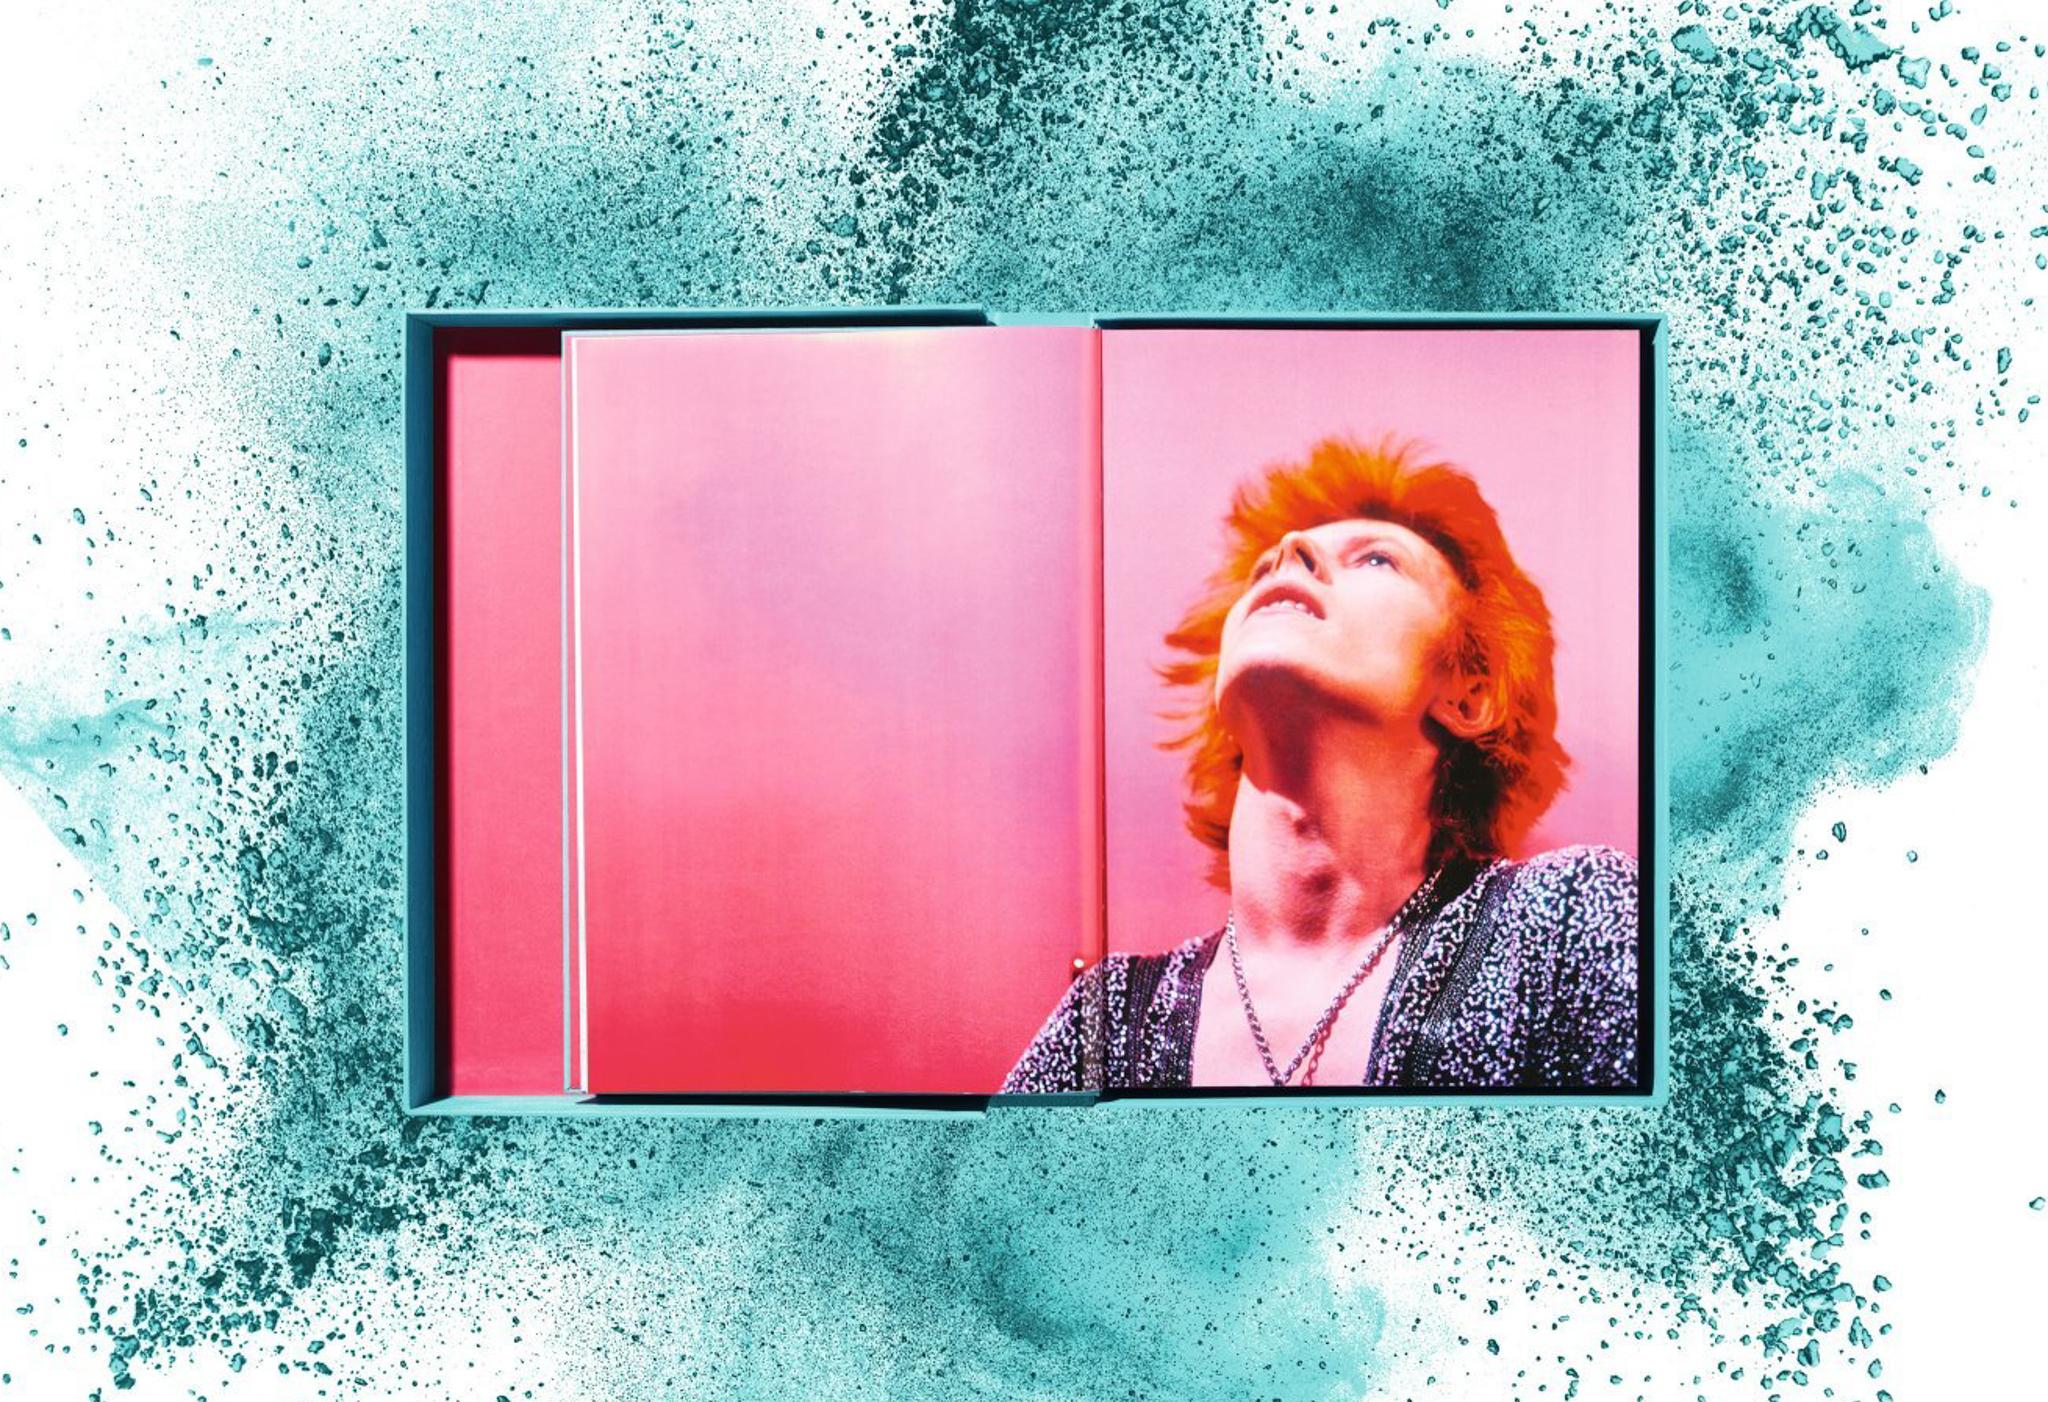 David Bowie - Édition d'art limitée TASCHEN avec impression pigmentaire signée à la main - Nouveau en vente 2